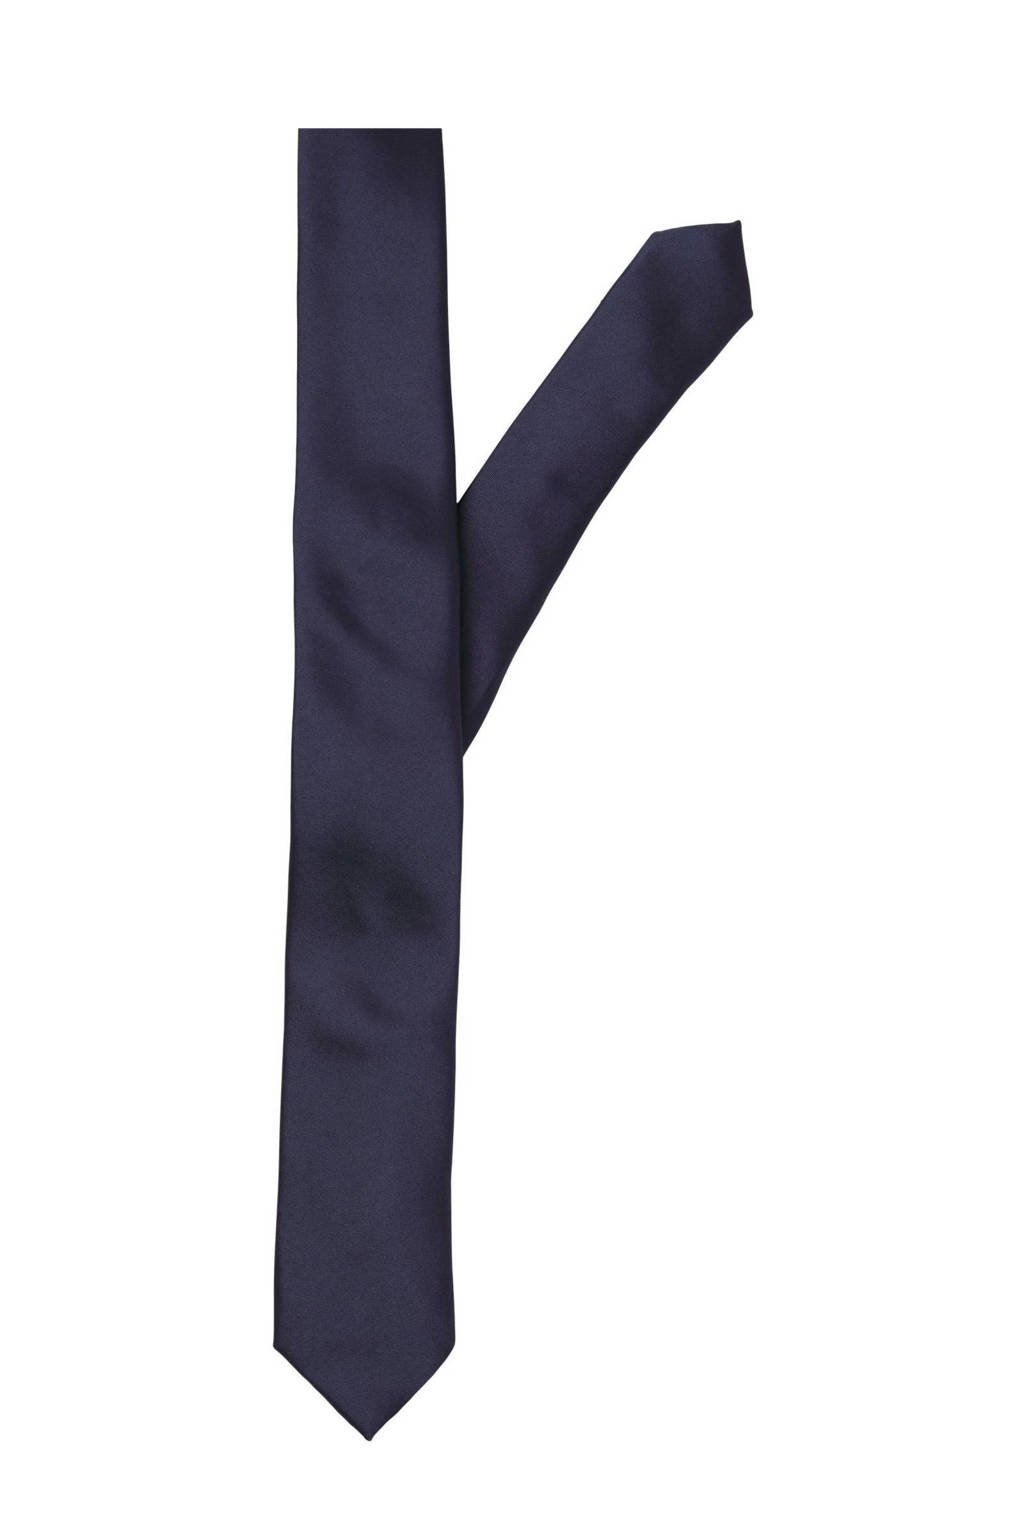 stropdas donkerblauw